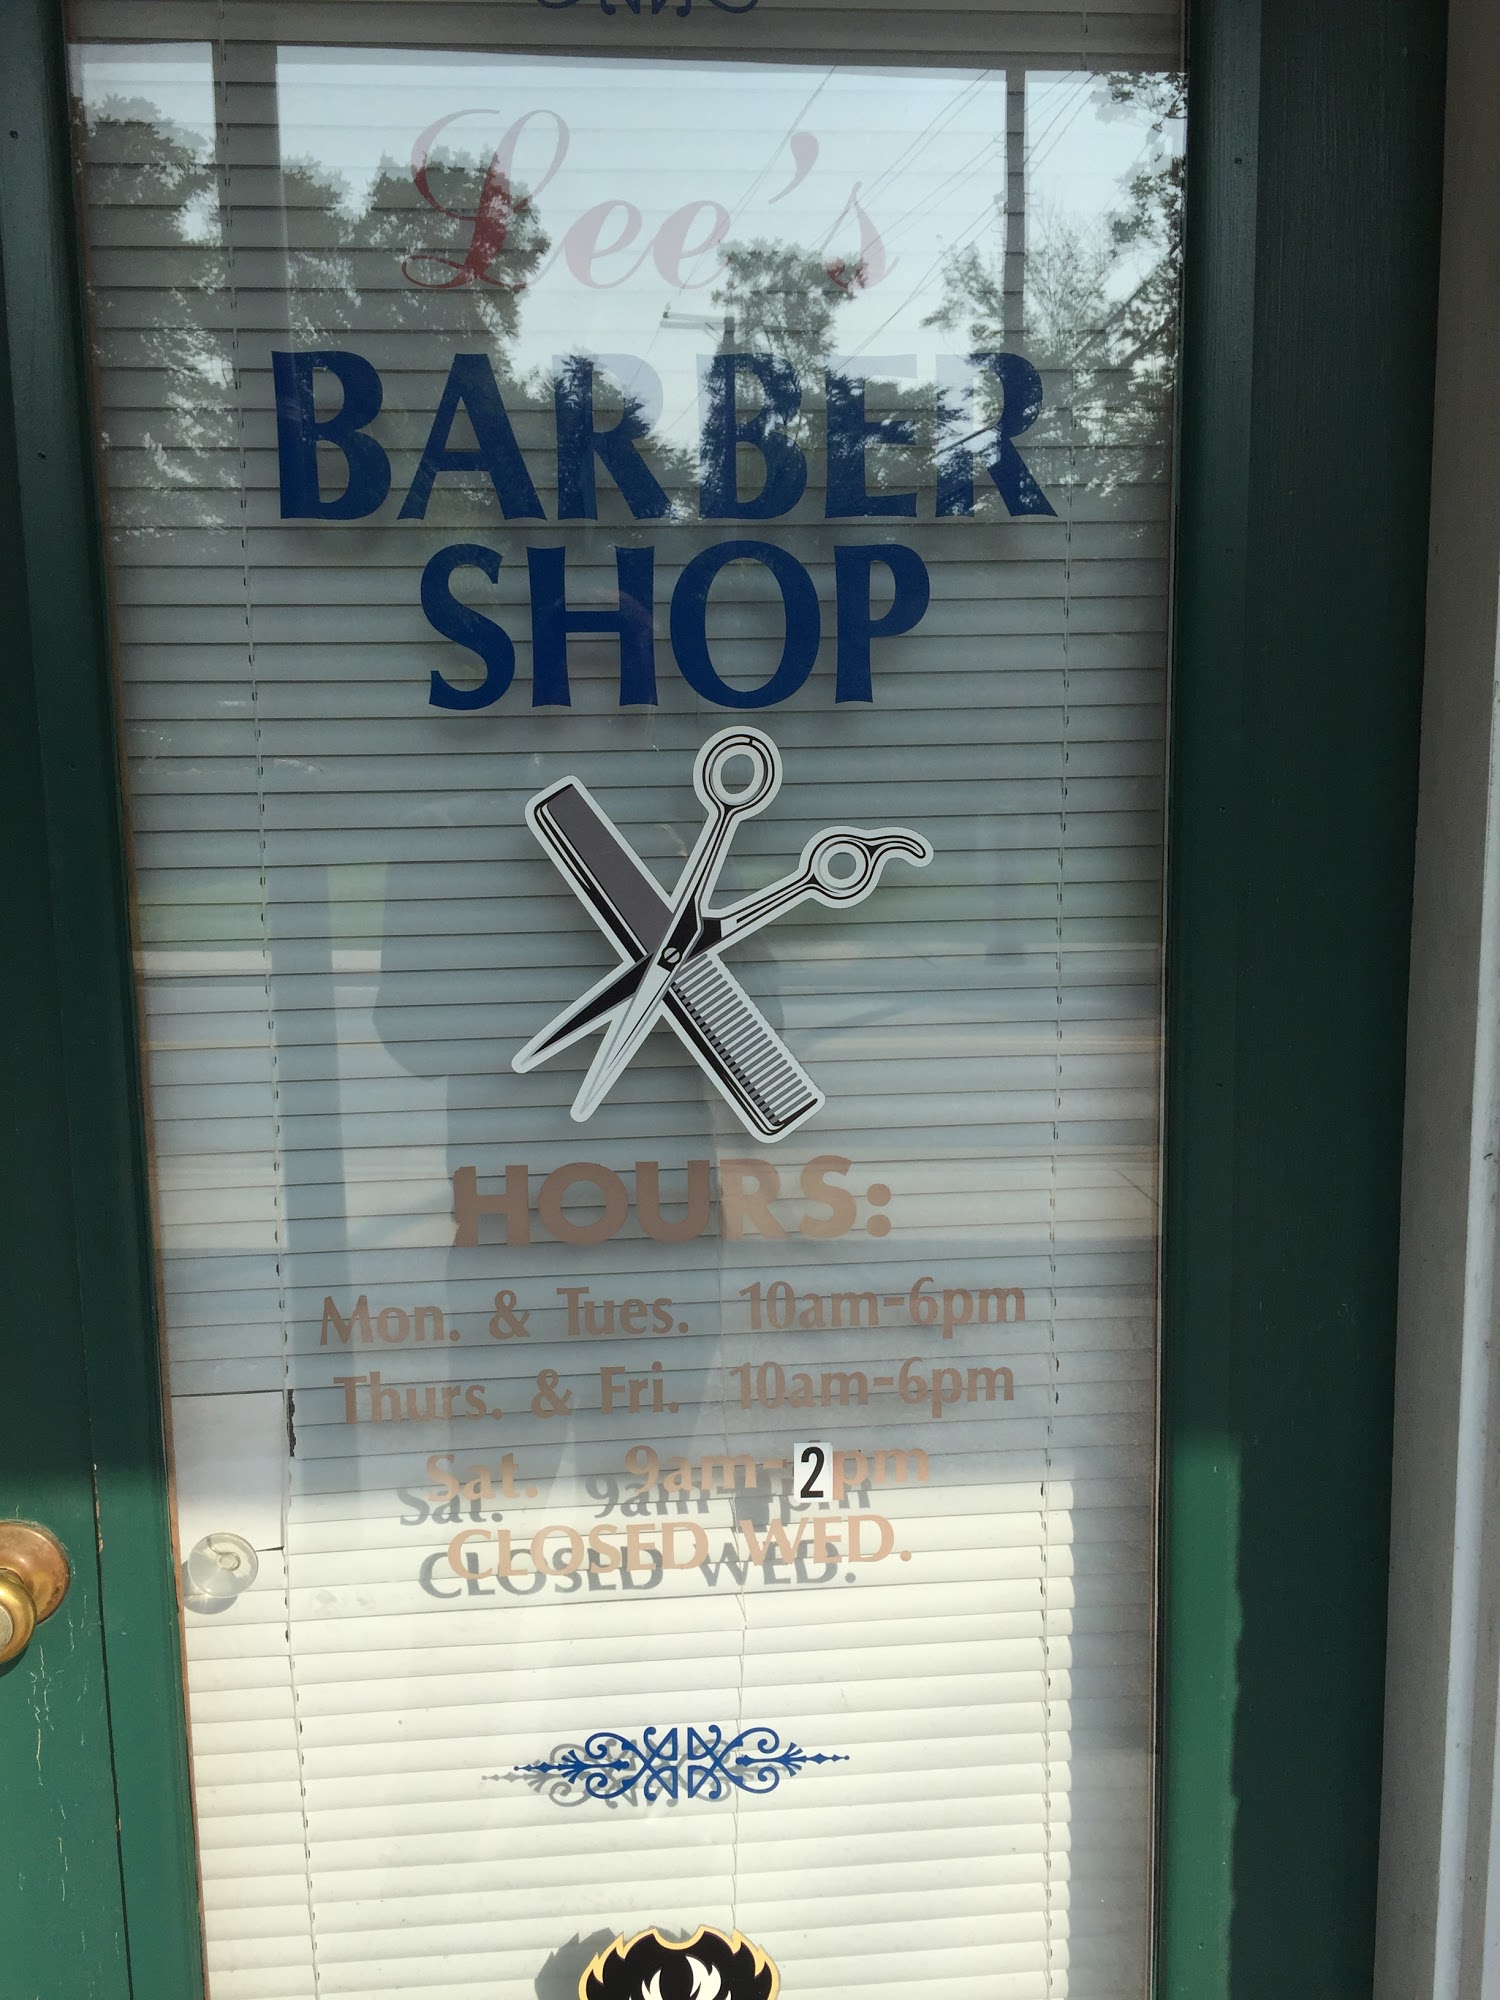 Lee's Barber Shop 4701 Leeds Ave, Halethorpe Maryland 21227